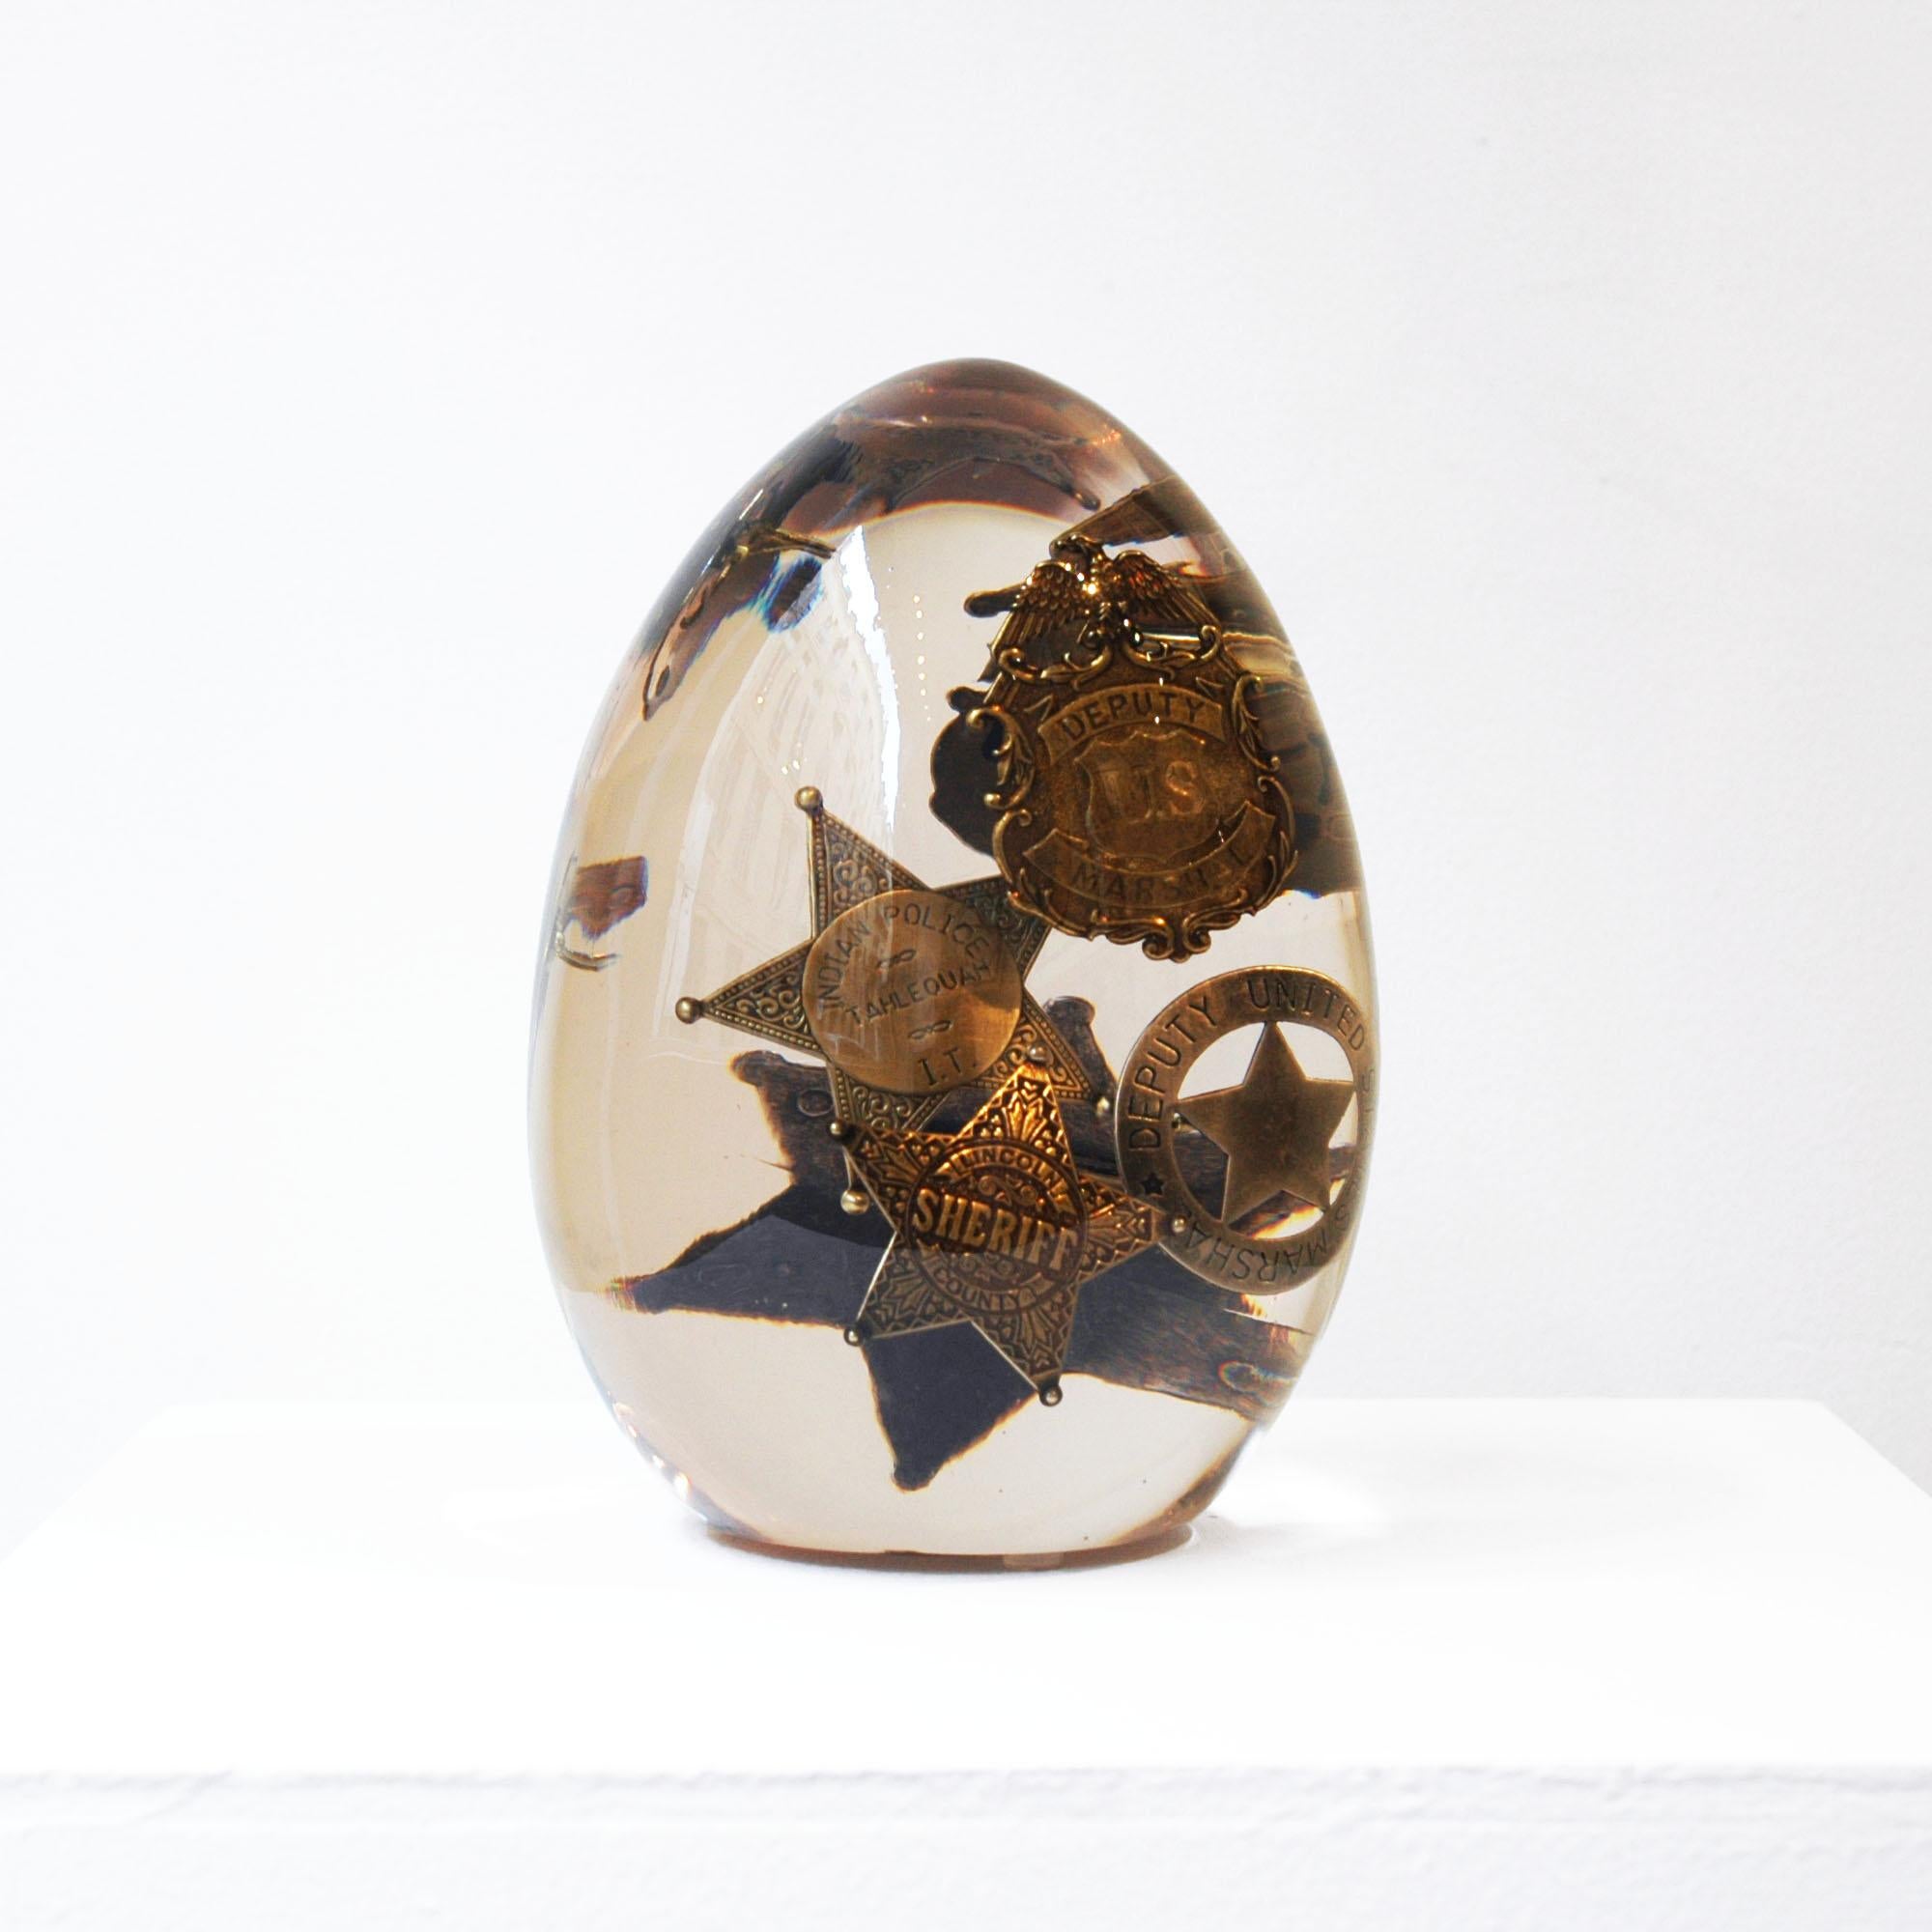 Holziges Ei – Sculpture von Helder Batista